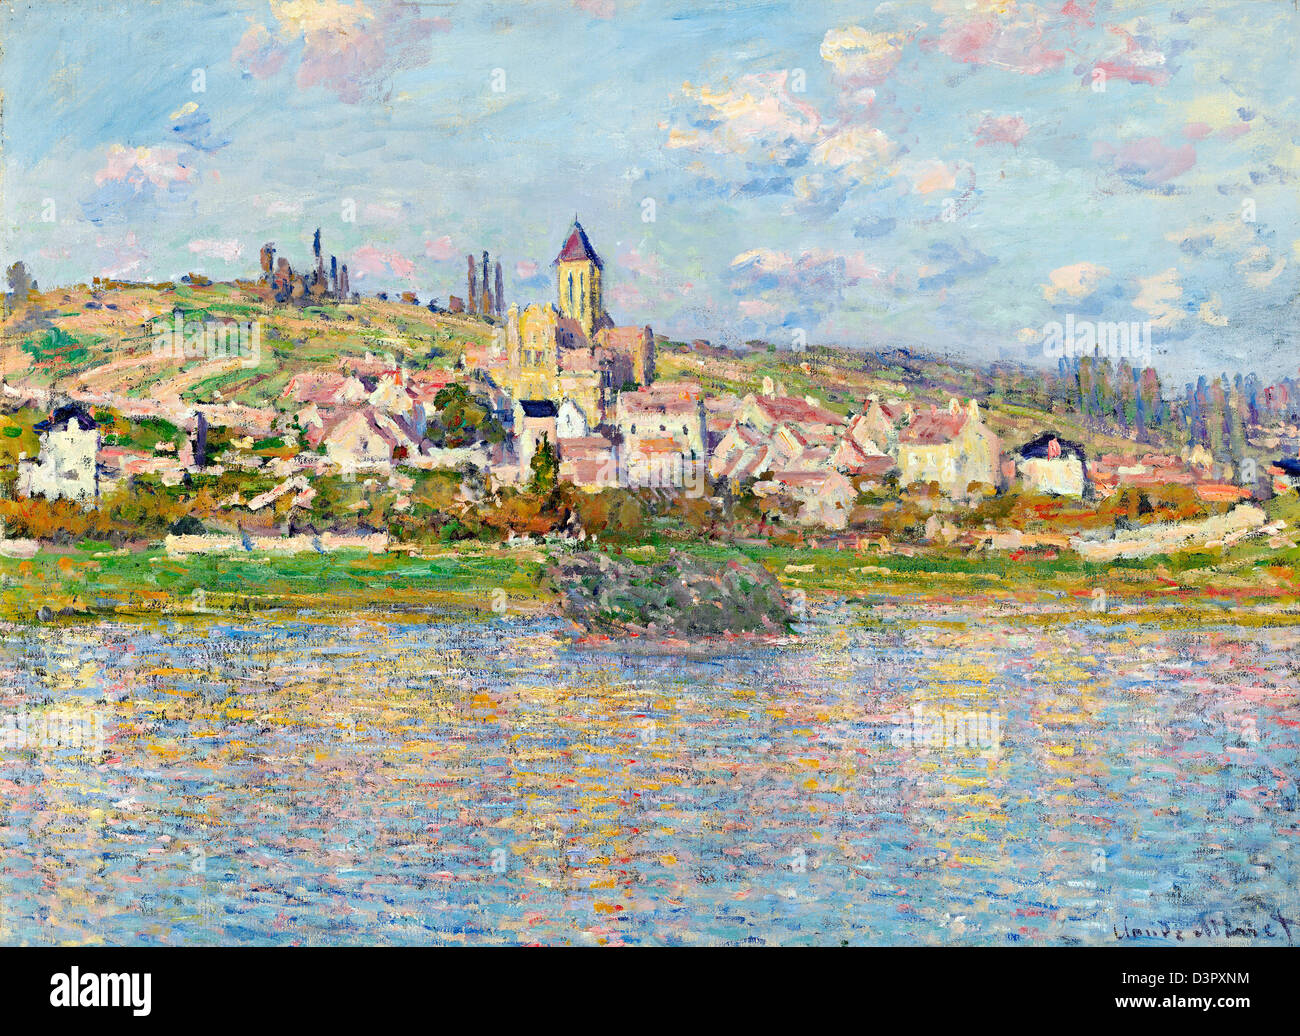 Vétheuil, Claude Monet 1879, huile sur toile. National Gallery of Victoria, Australie Banque D'Images